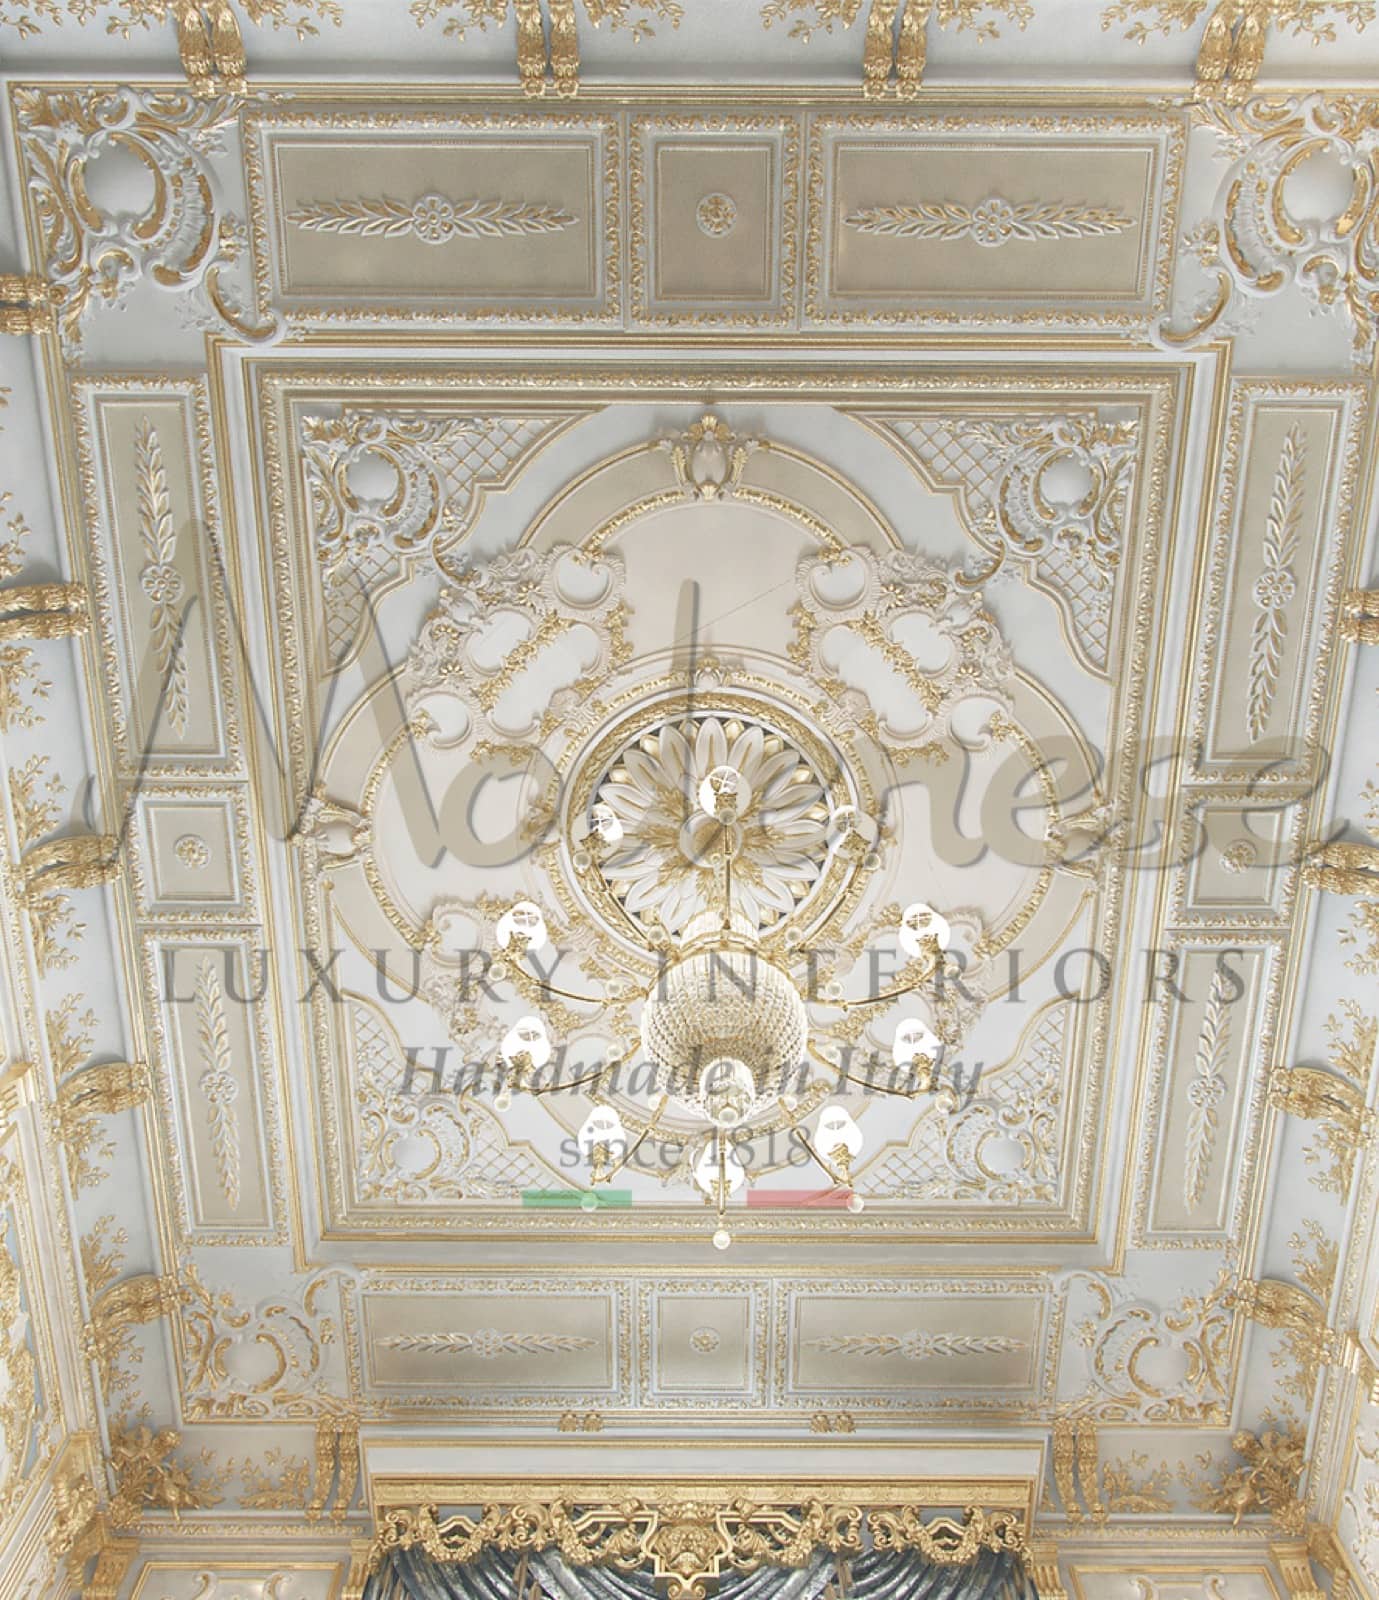 резной деревянный потолок, золотые детали, применение сусального золота ручной работы в стиле барокко, классические идеи дизайна интерьера, элегантный, стильный декор, роскошная люстра, буазери, индивидуальный дизайн, индивидуальный дизайн на заказ, вилла, дворец